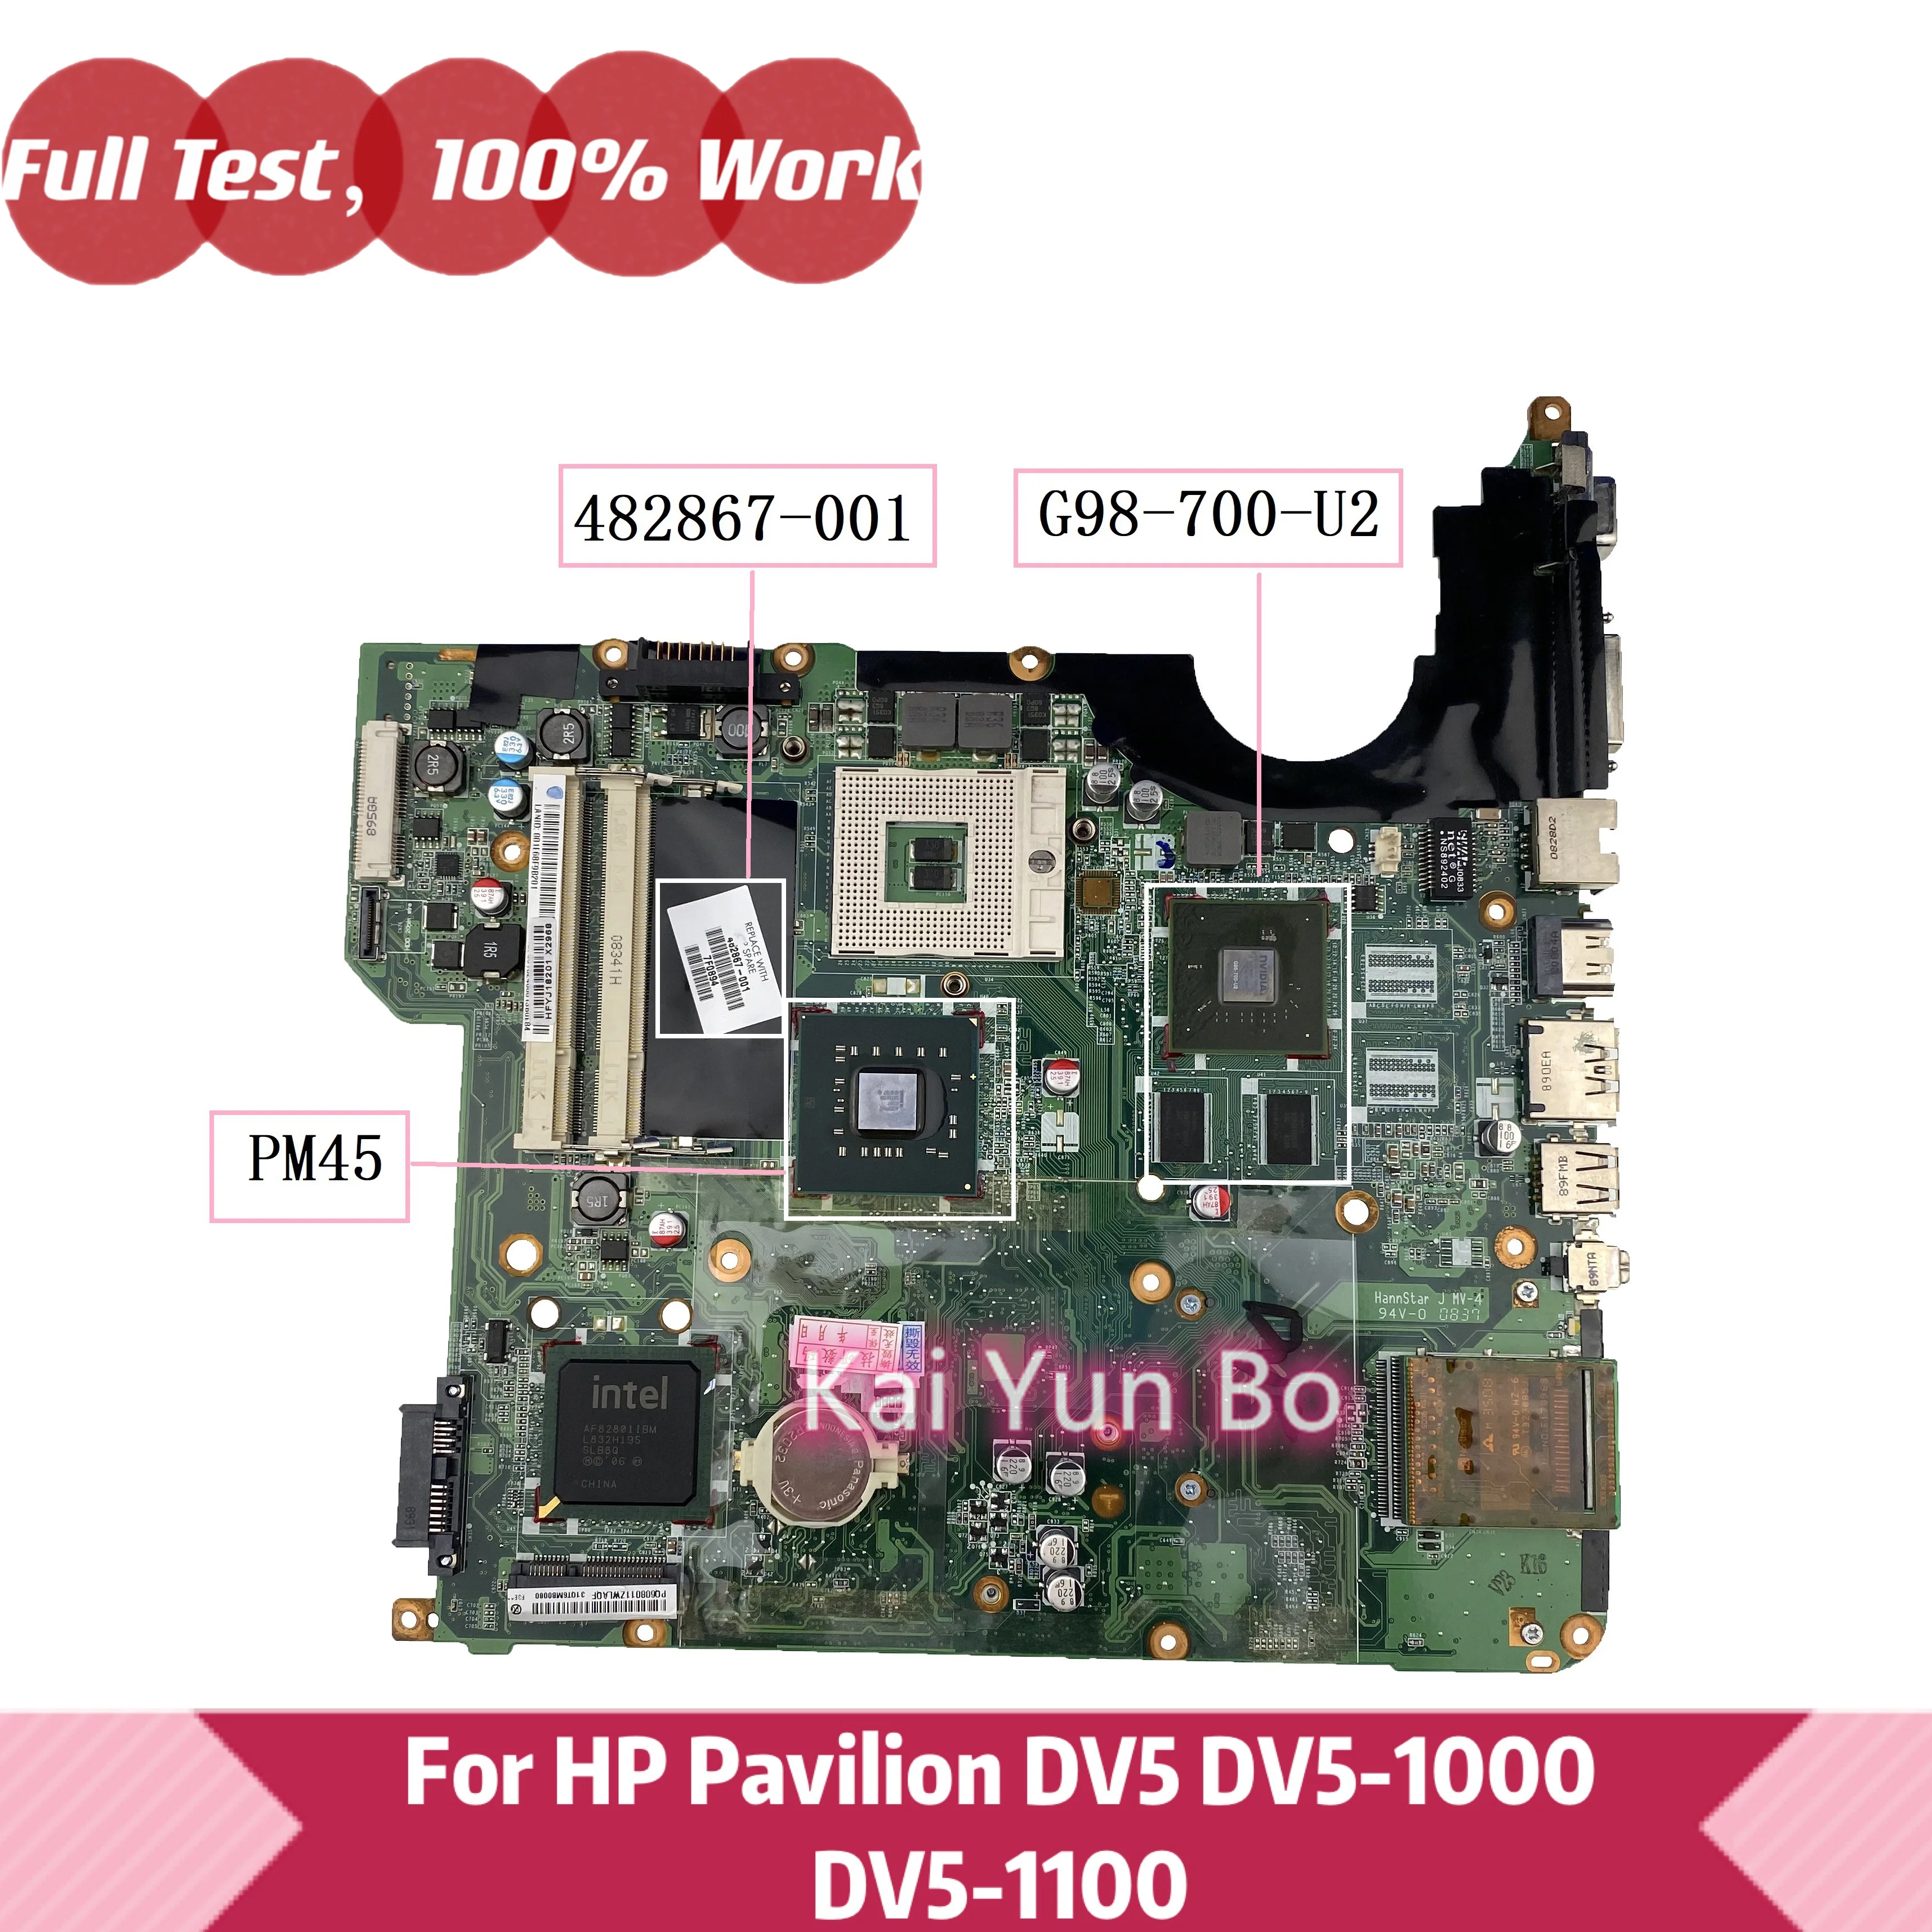 

482867-001 For HP Pavilion DV5 dv5-1000 DV5-1003CL dv5-1100 dv5-1160us Laptop Motherboard G98-700-U2 PM45 DDR2 100% Tested OK